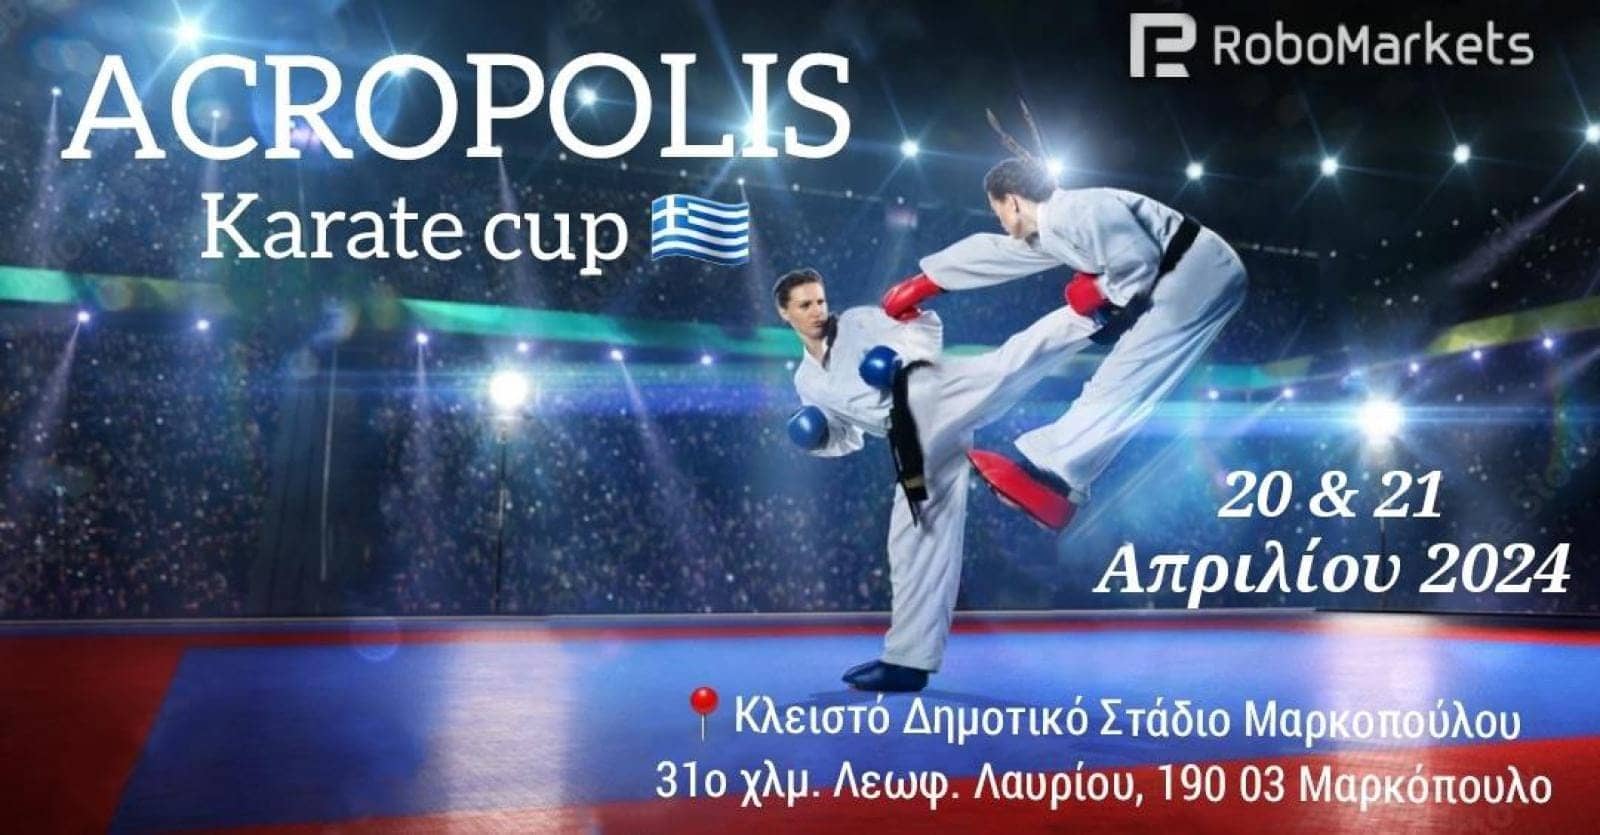 shotokan-karate-xylokastro-acropolis-cup-sportshunter-1